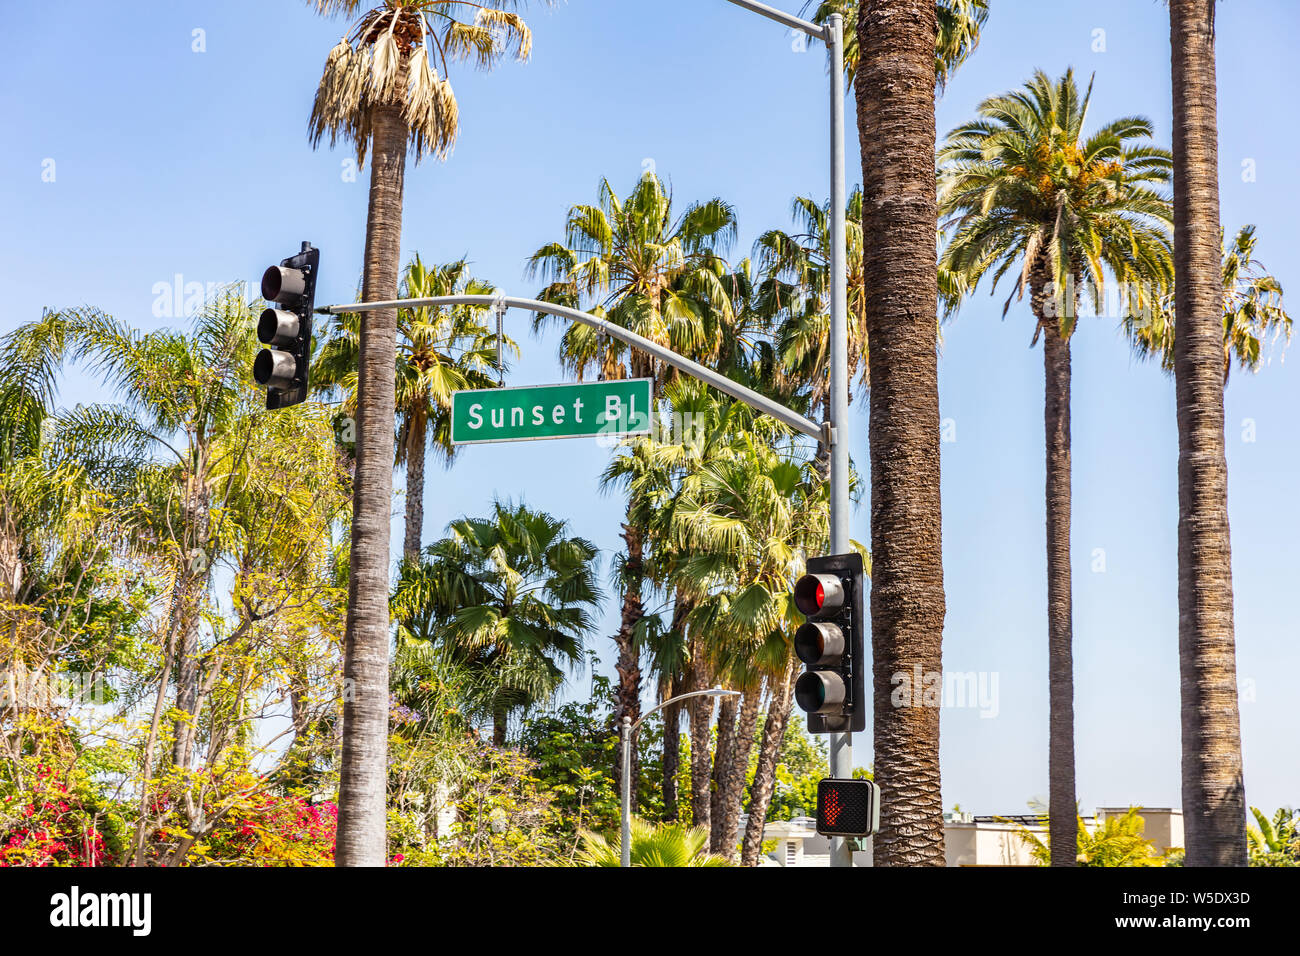 Los Angeles, Kalifornien, USA. 31. Mai 2019. Sonnenuntergang s. Text auf grünes Schild, rote Ampel, Palmen und blauer Himmel. Sonniger Frühlingstag. Stockfoto